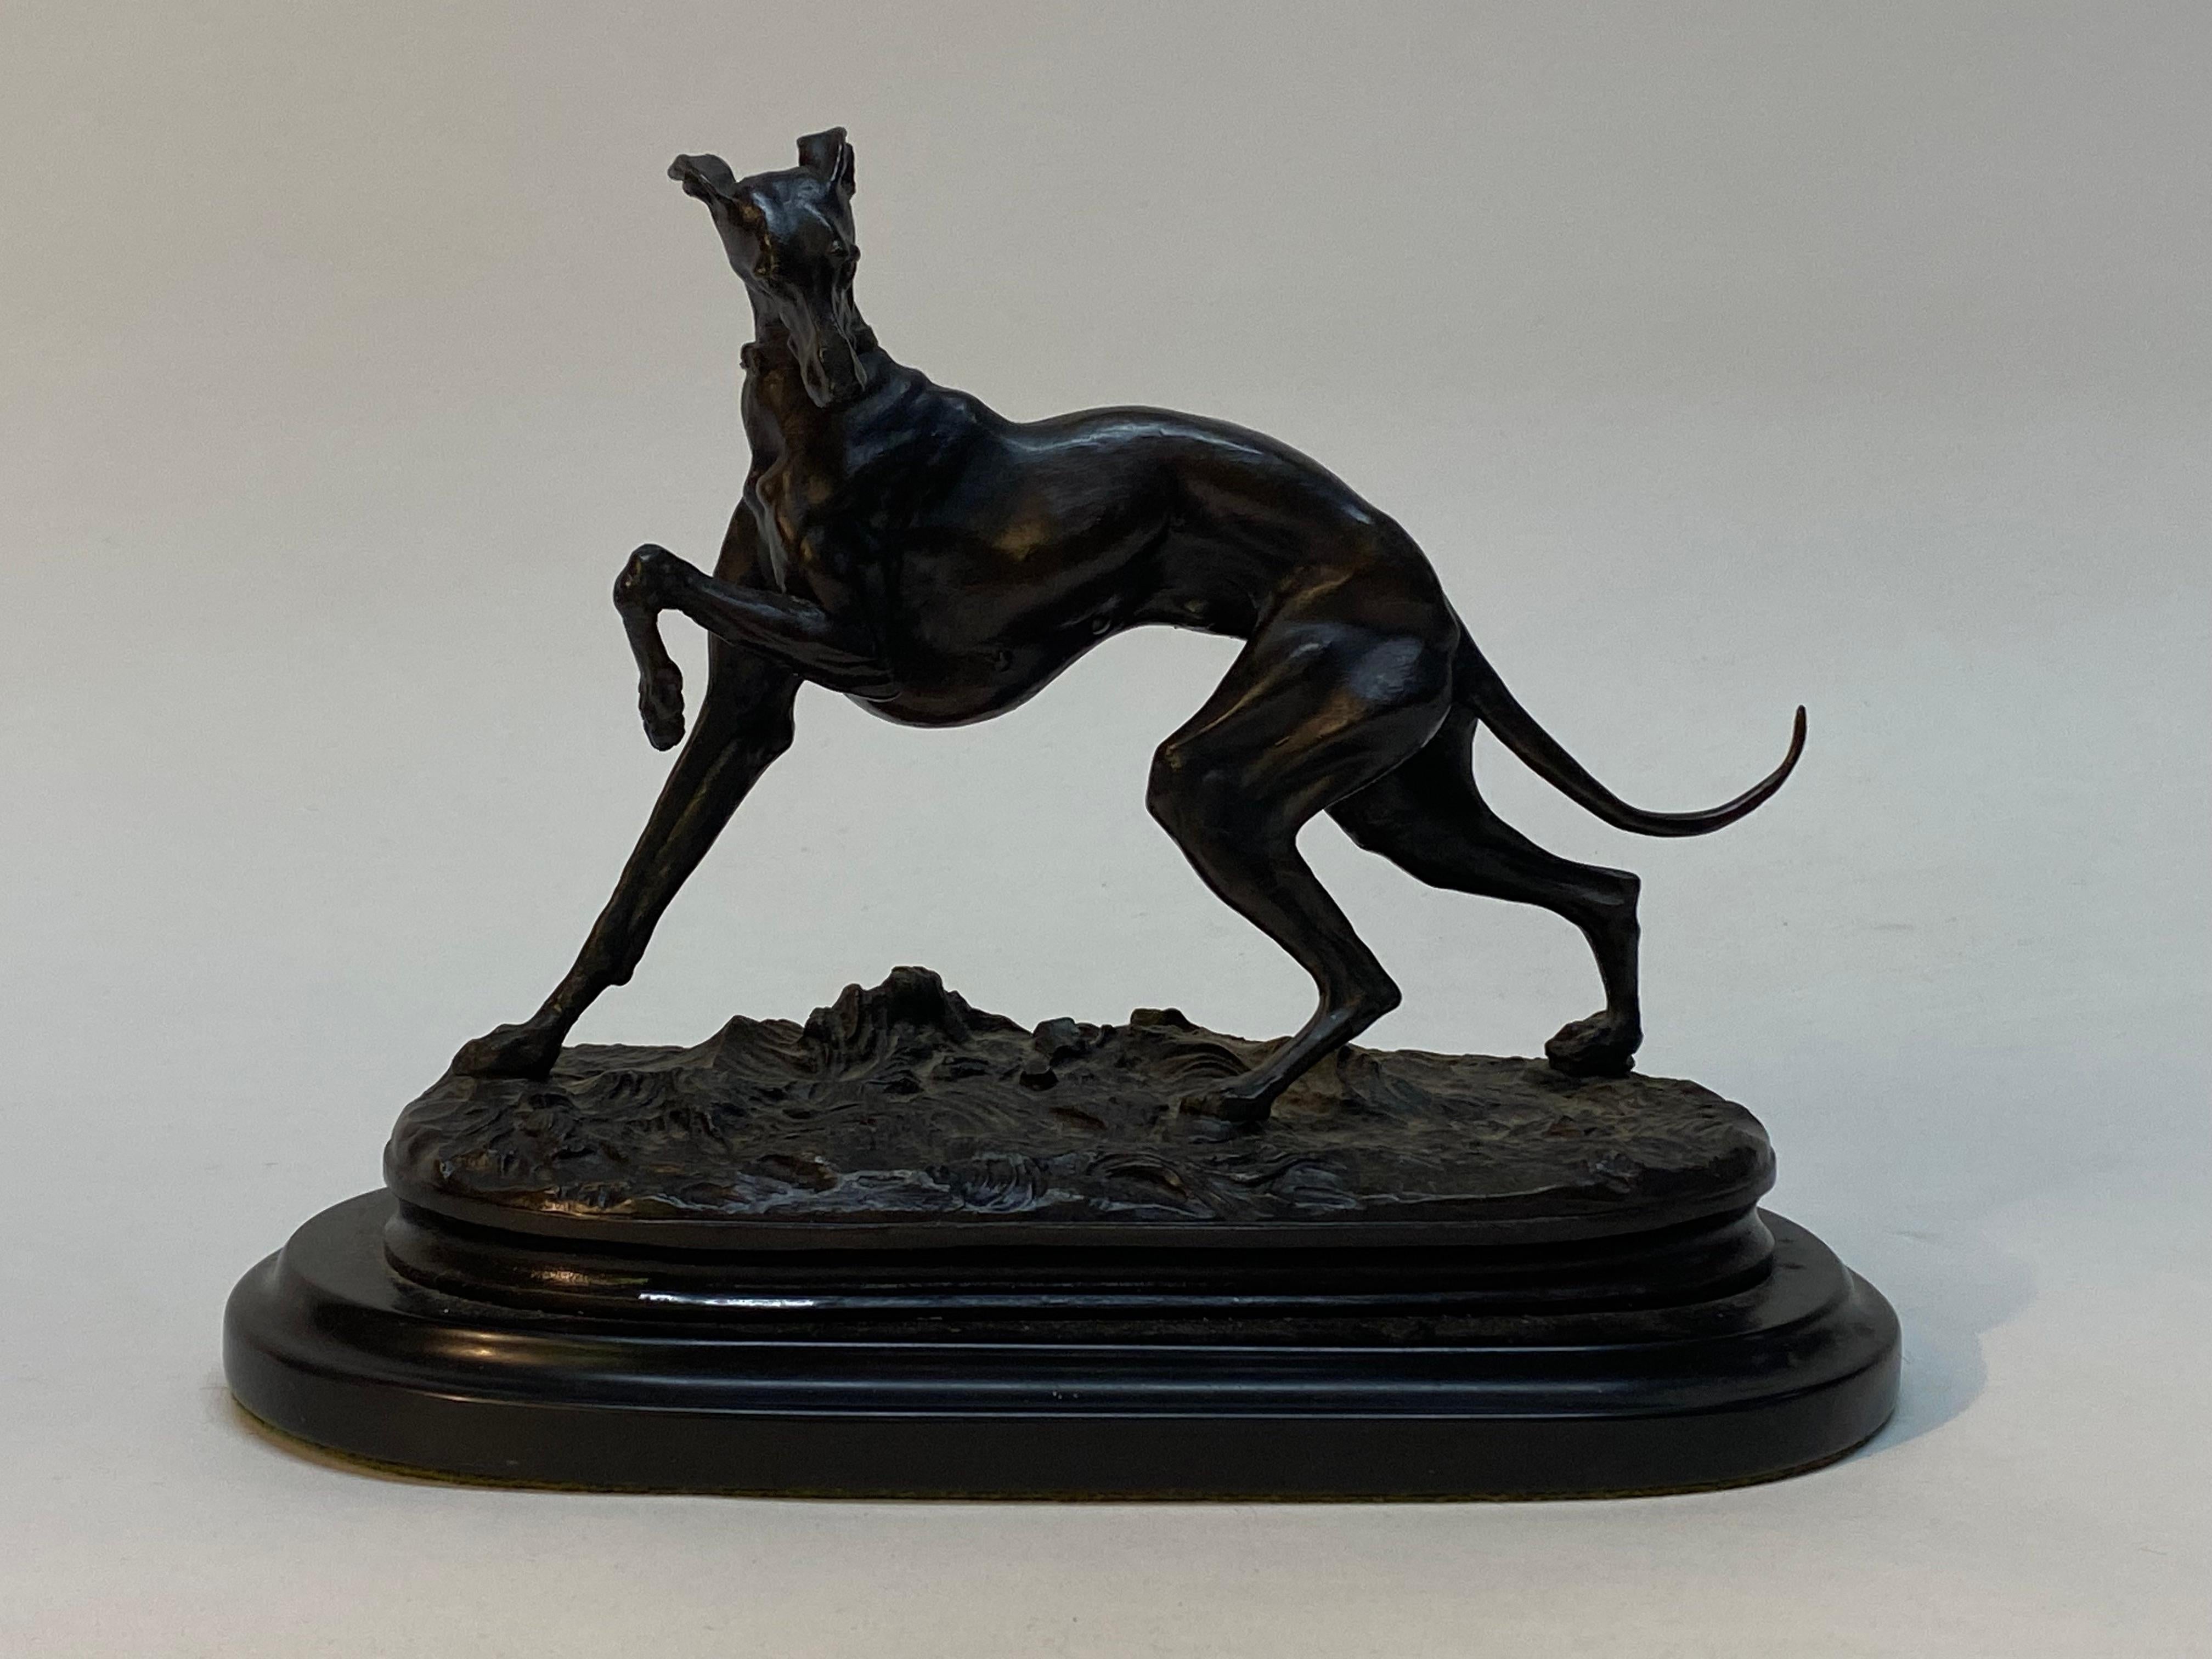 Aus Bronze gegossener tänzelnder Windhund von Pierre Jules Mene, (1810-1879). Die hochdetaillierte Bronze ruht auf einem Sockel aus Granit. Geprägte Unterschrift, PJ Mene. Kein Gießereiprüfzeichen, aber das stimmt mit der Arbeit von Men überein.